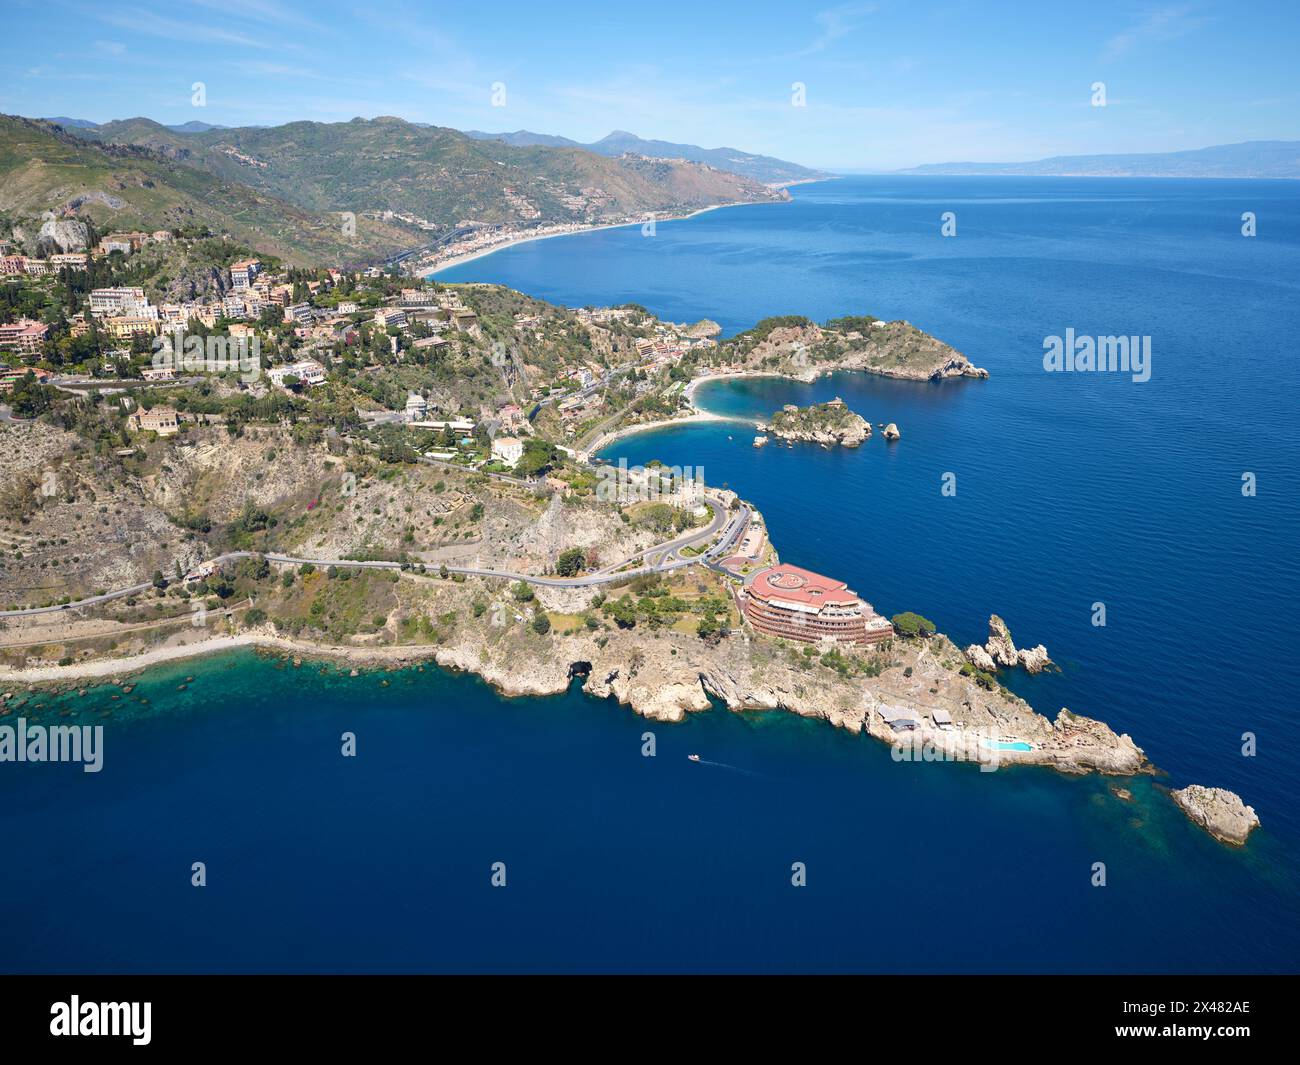 VISTA AEREA. I promontori rocciosi di Taormina che si estendono nel Mar Ionio. Città metropolitana di Messina, Sicilia, Italia. Foto Stock